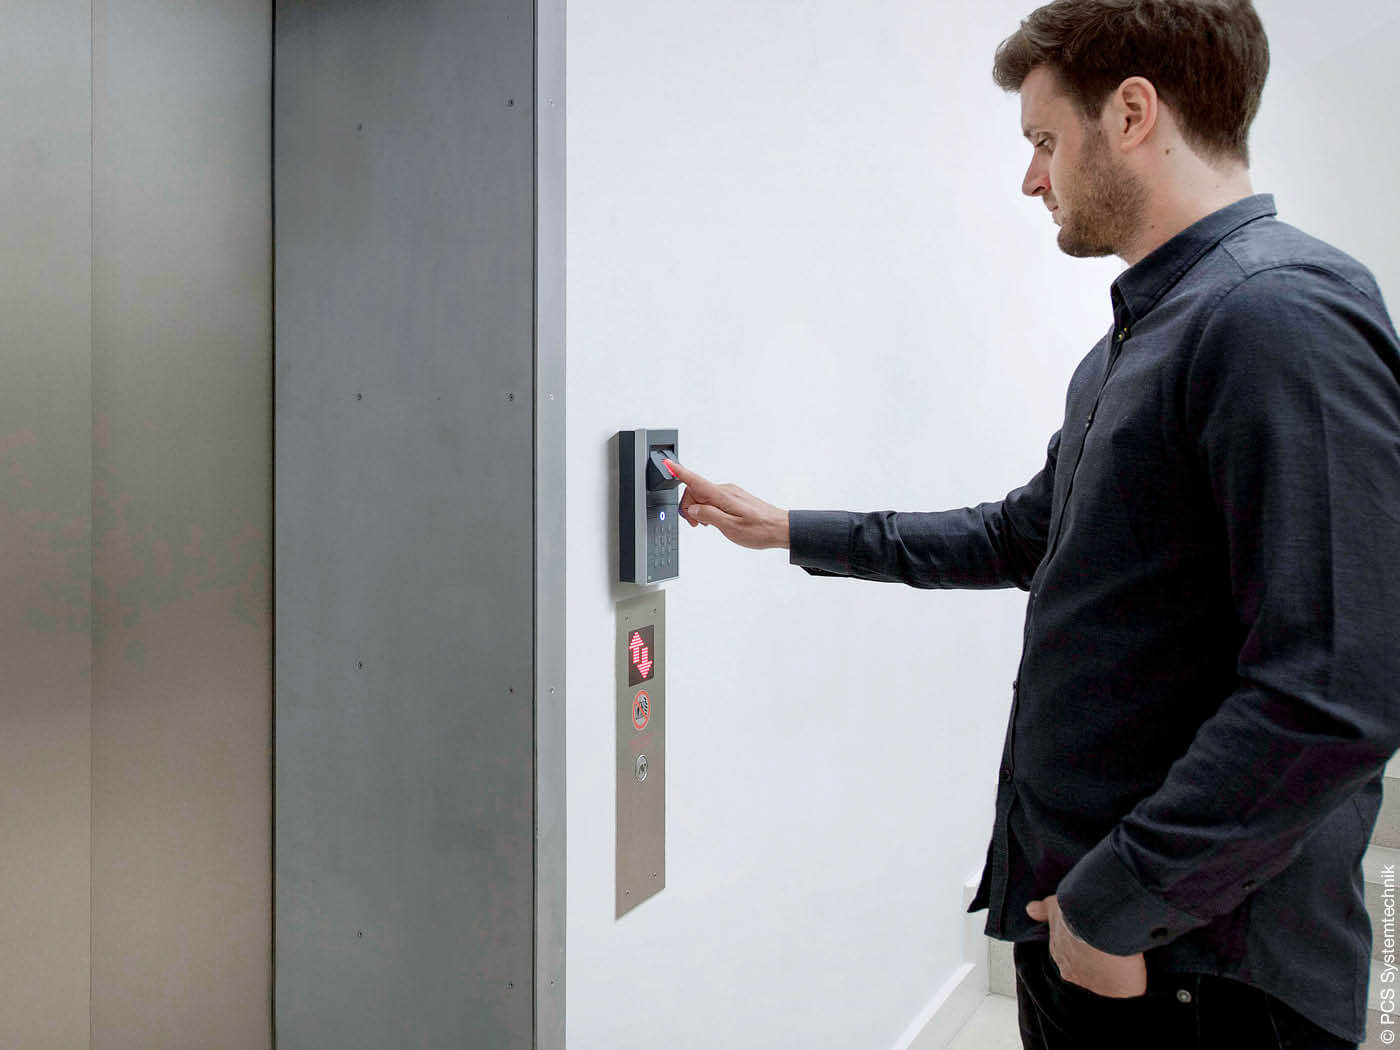 Mann identifiziert sich am Aufzug mit seinem Fingerabdruck